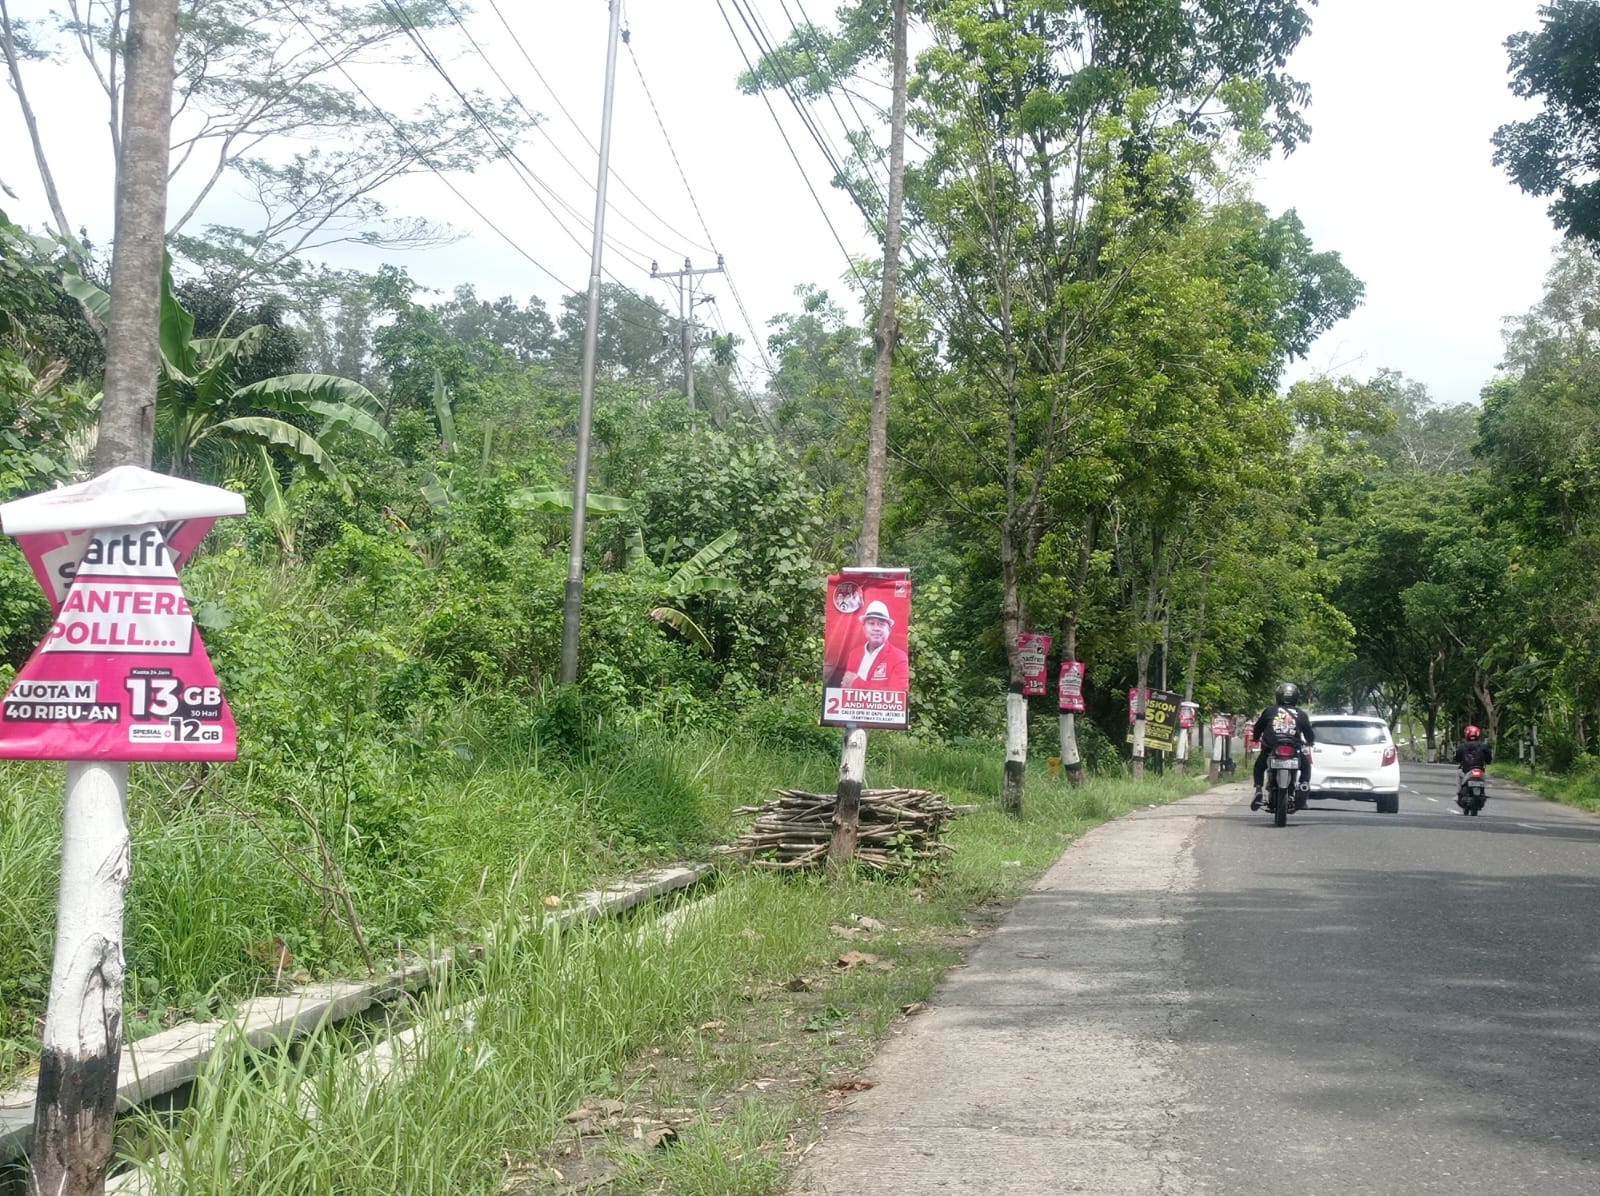 Reklame dan APK Caleg Terpaku di Pohon Masih Ditemui, Satpol PP : Penertiban Komando dari Bawaslu